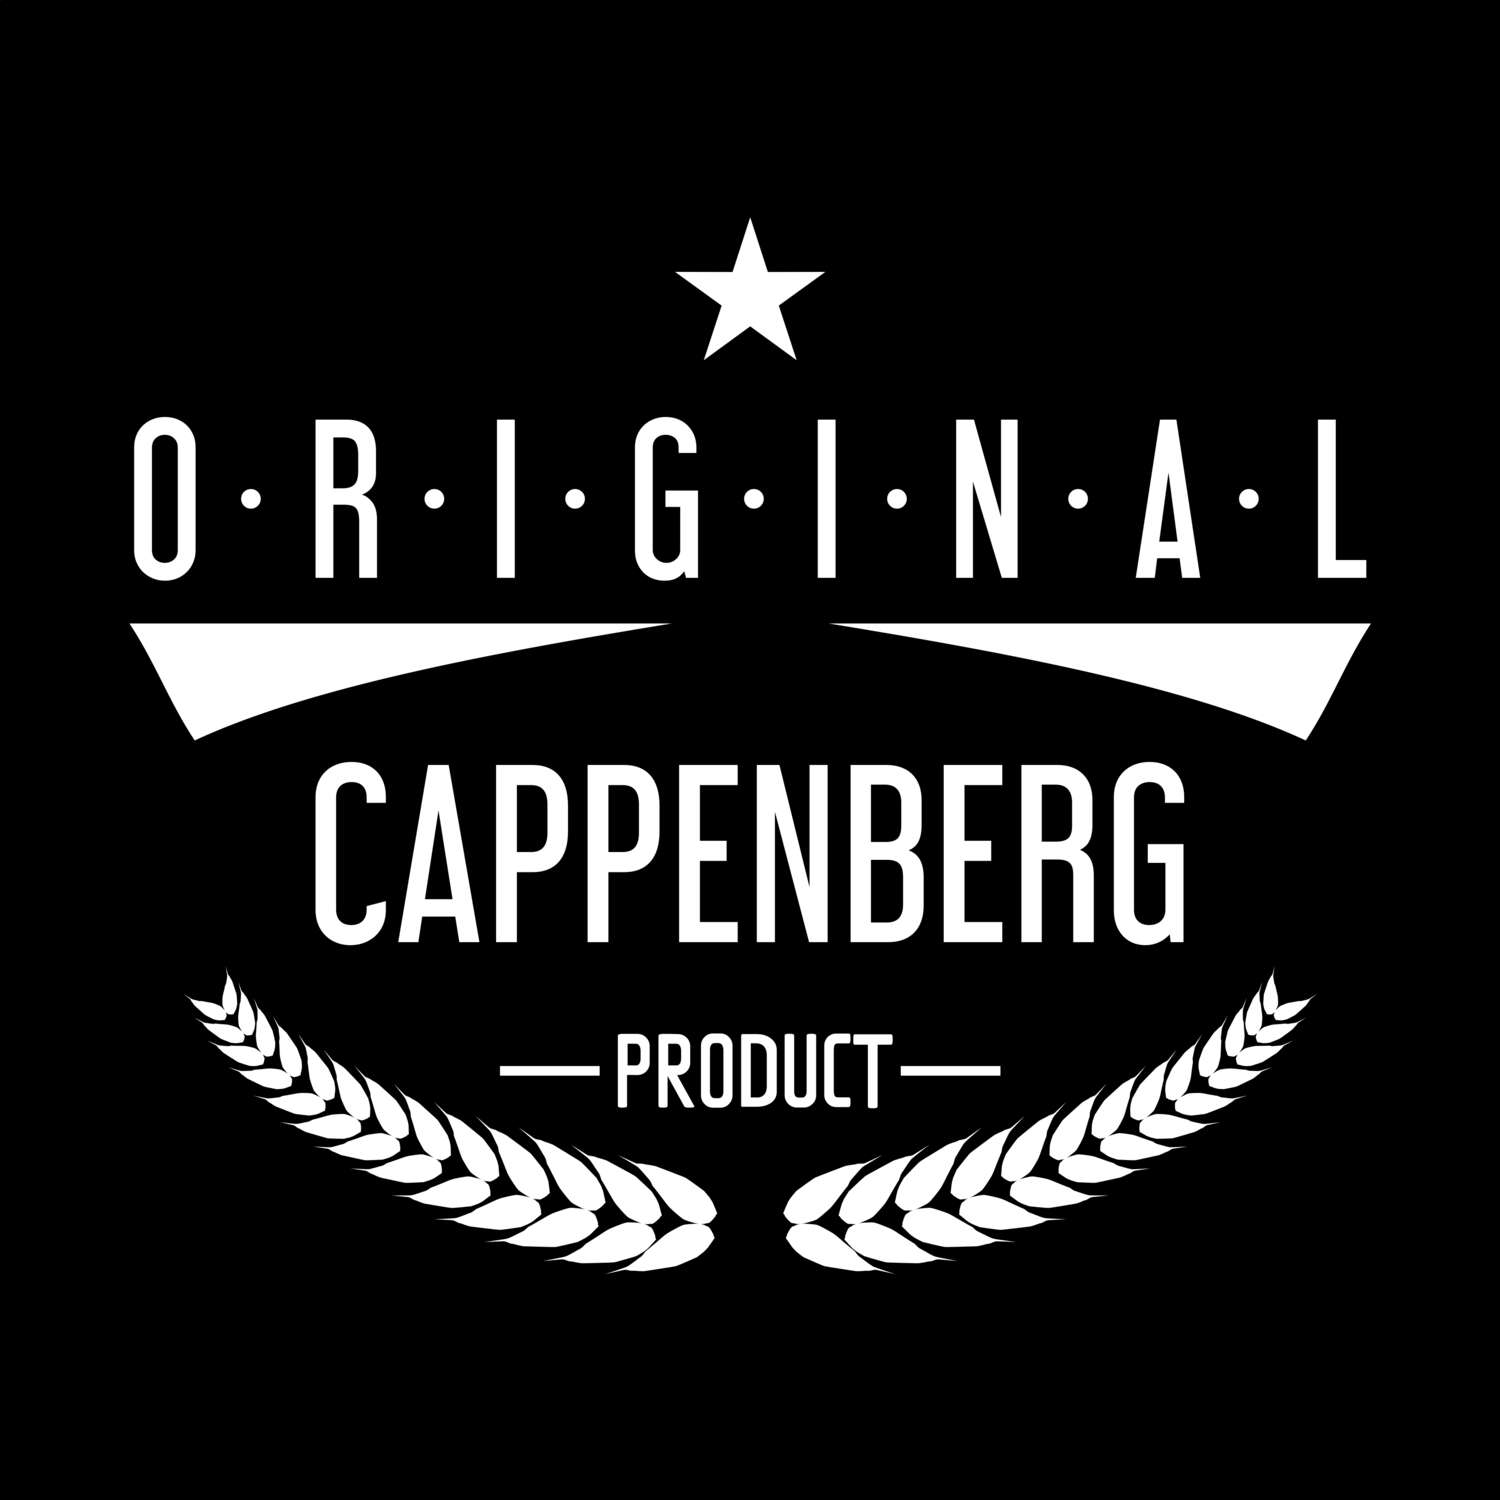 Cappenberg T-Shirt »Original Product«